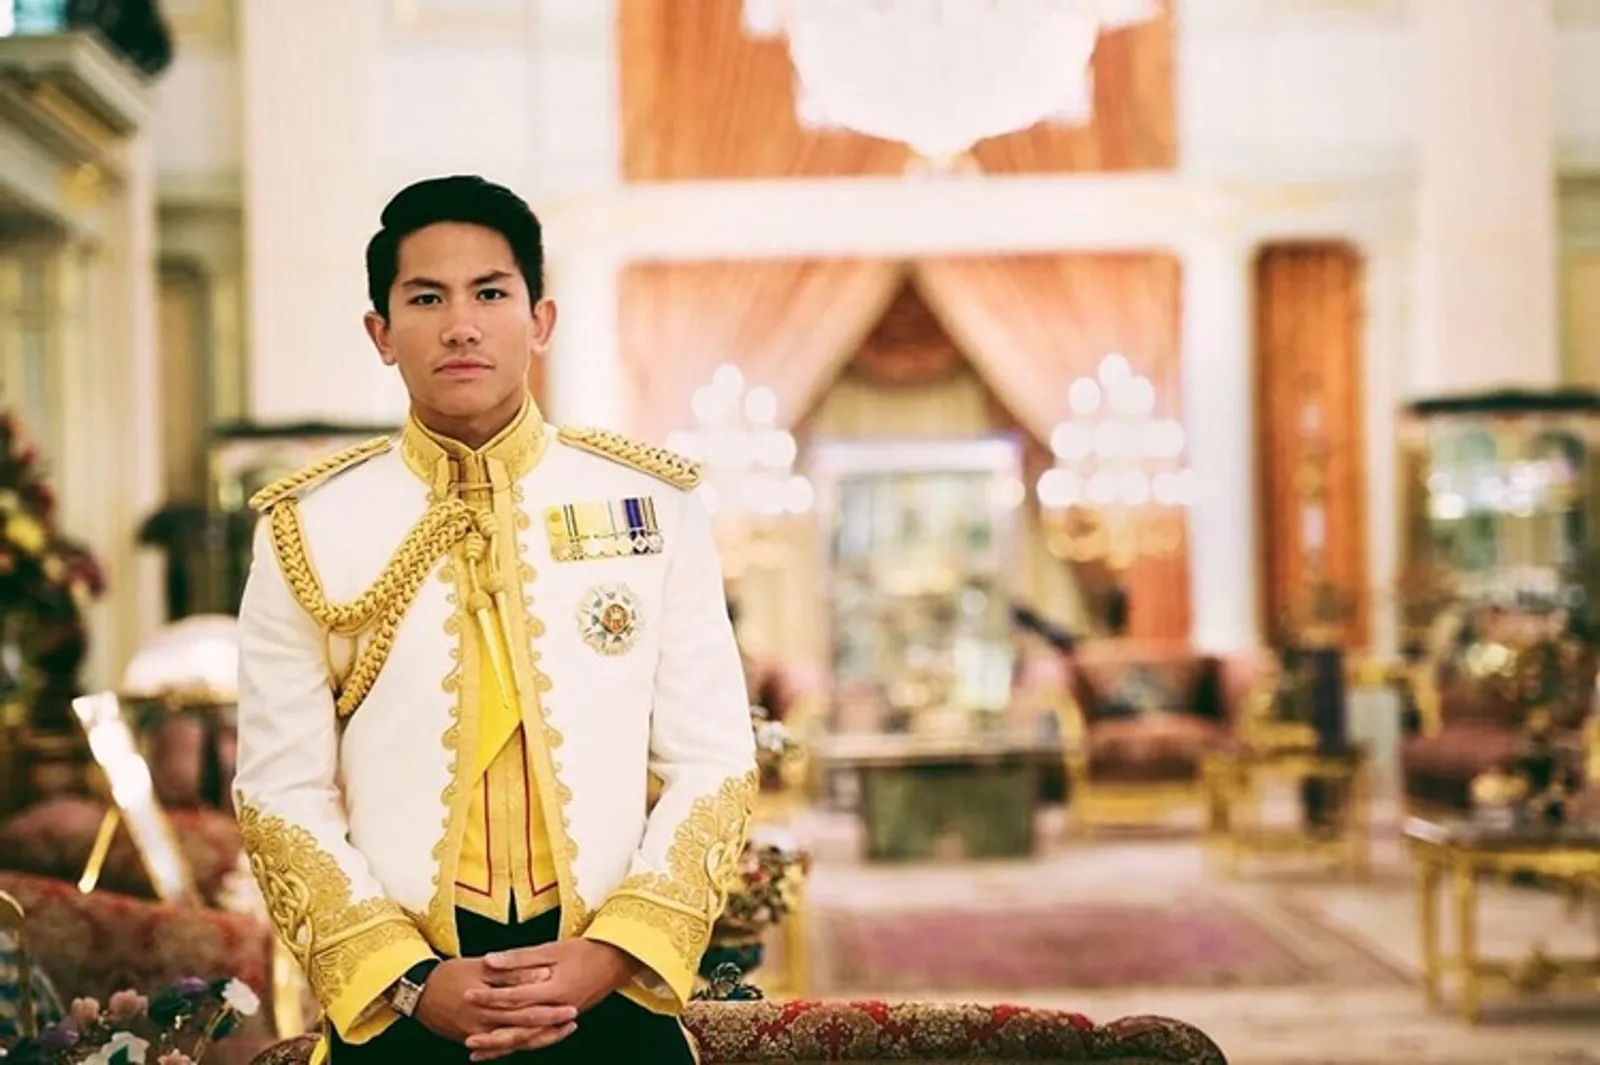 9 Pesona Pangeran Abdul Mateen yang Bikin Perempuan Jatuh Hati